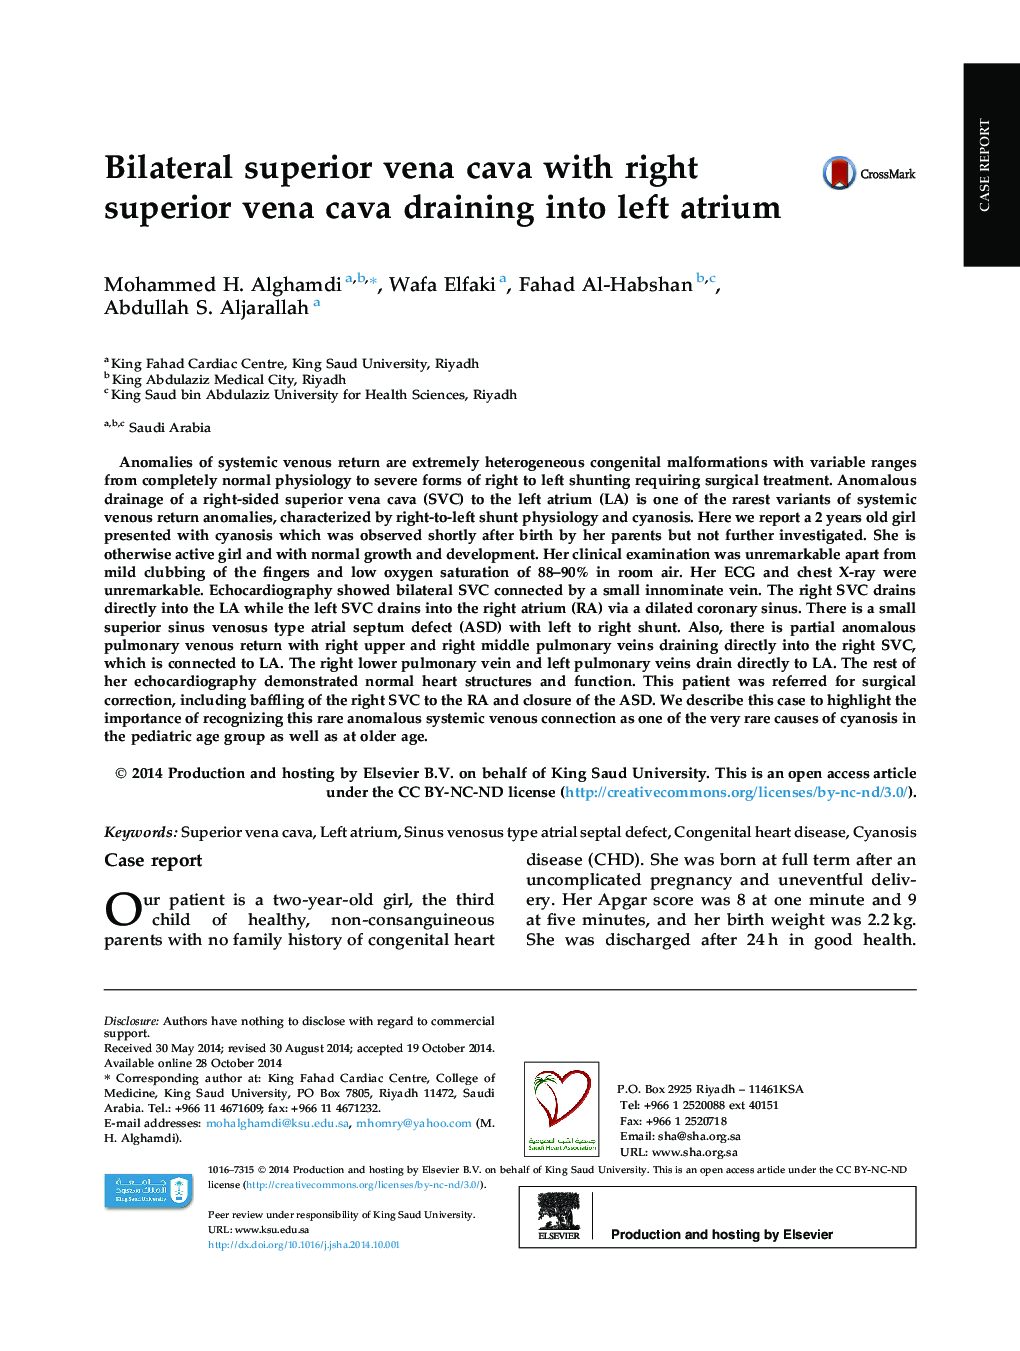 Bilateral superior vena cava with right superior vena cava draining into left atrium